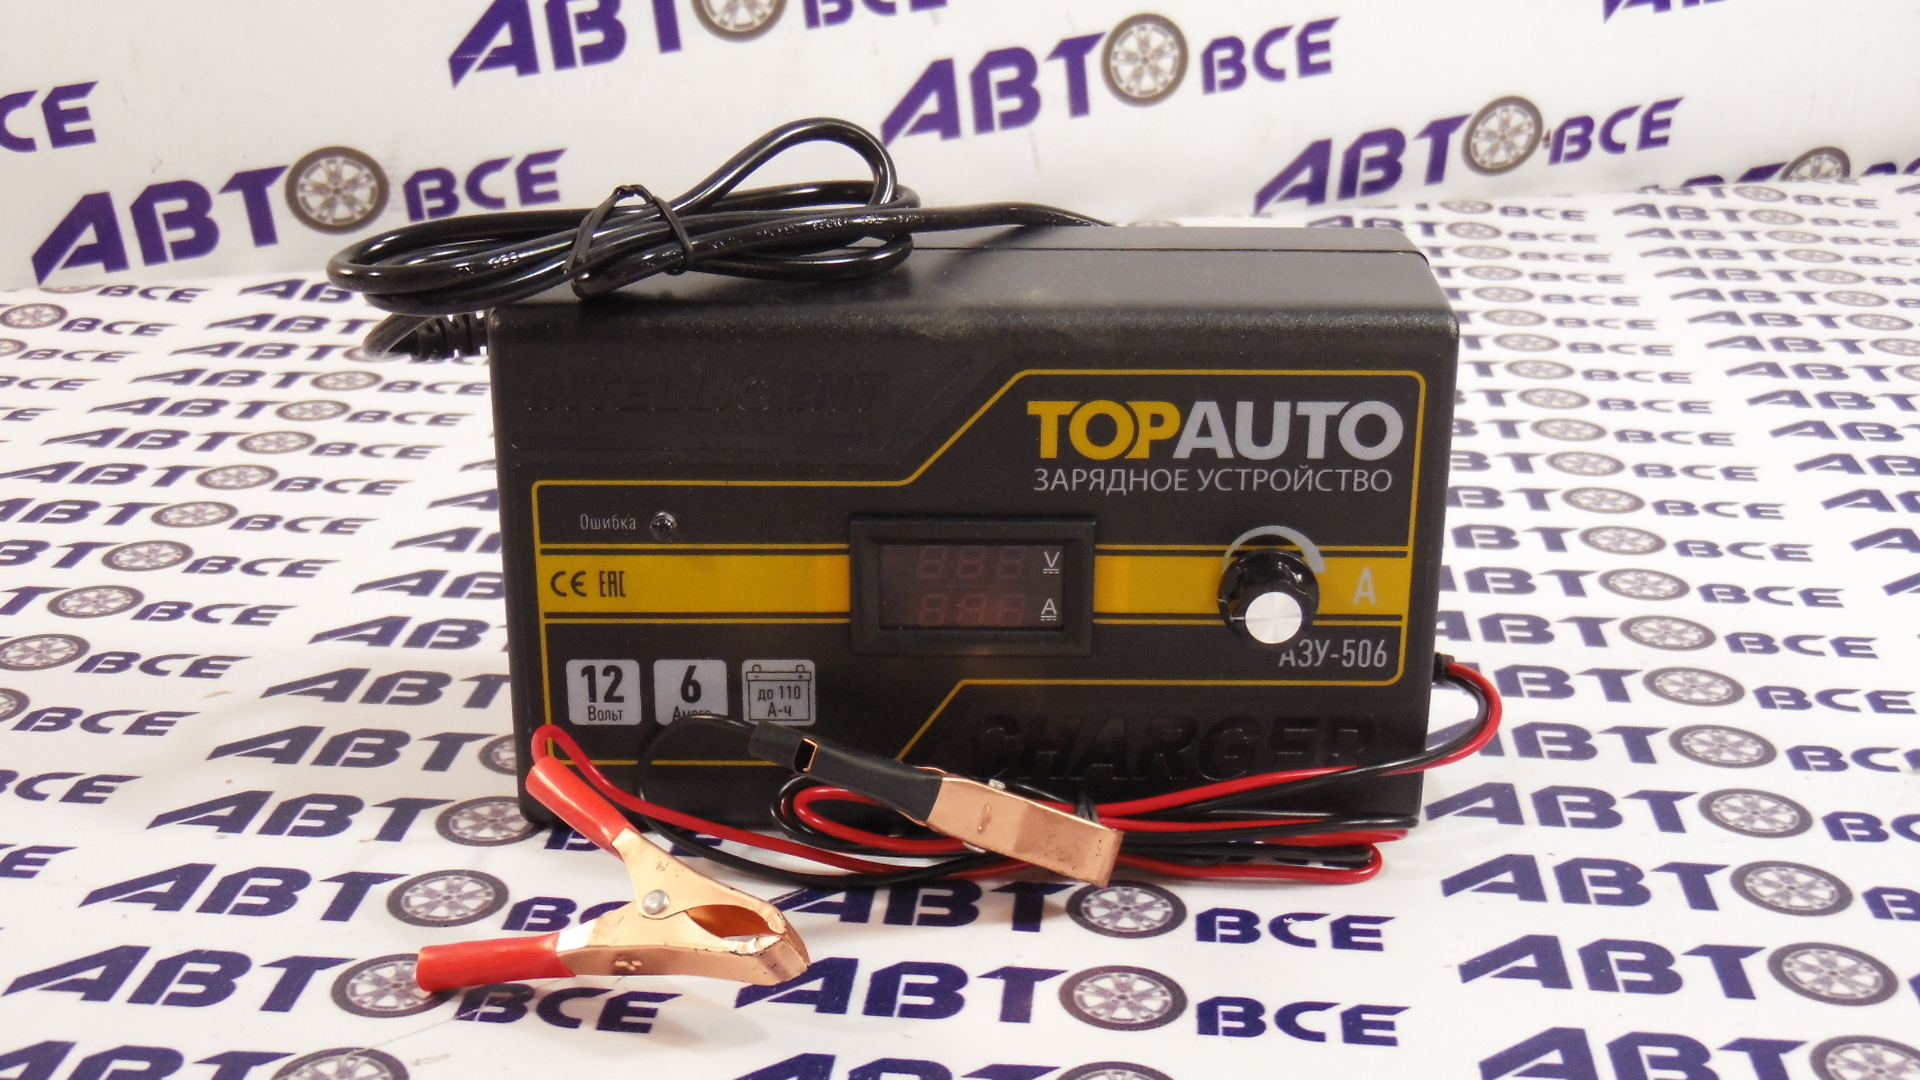 Зарядное устройство для АКБ 12V 6A (автомат) АЗУ-506 ТопАвто